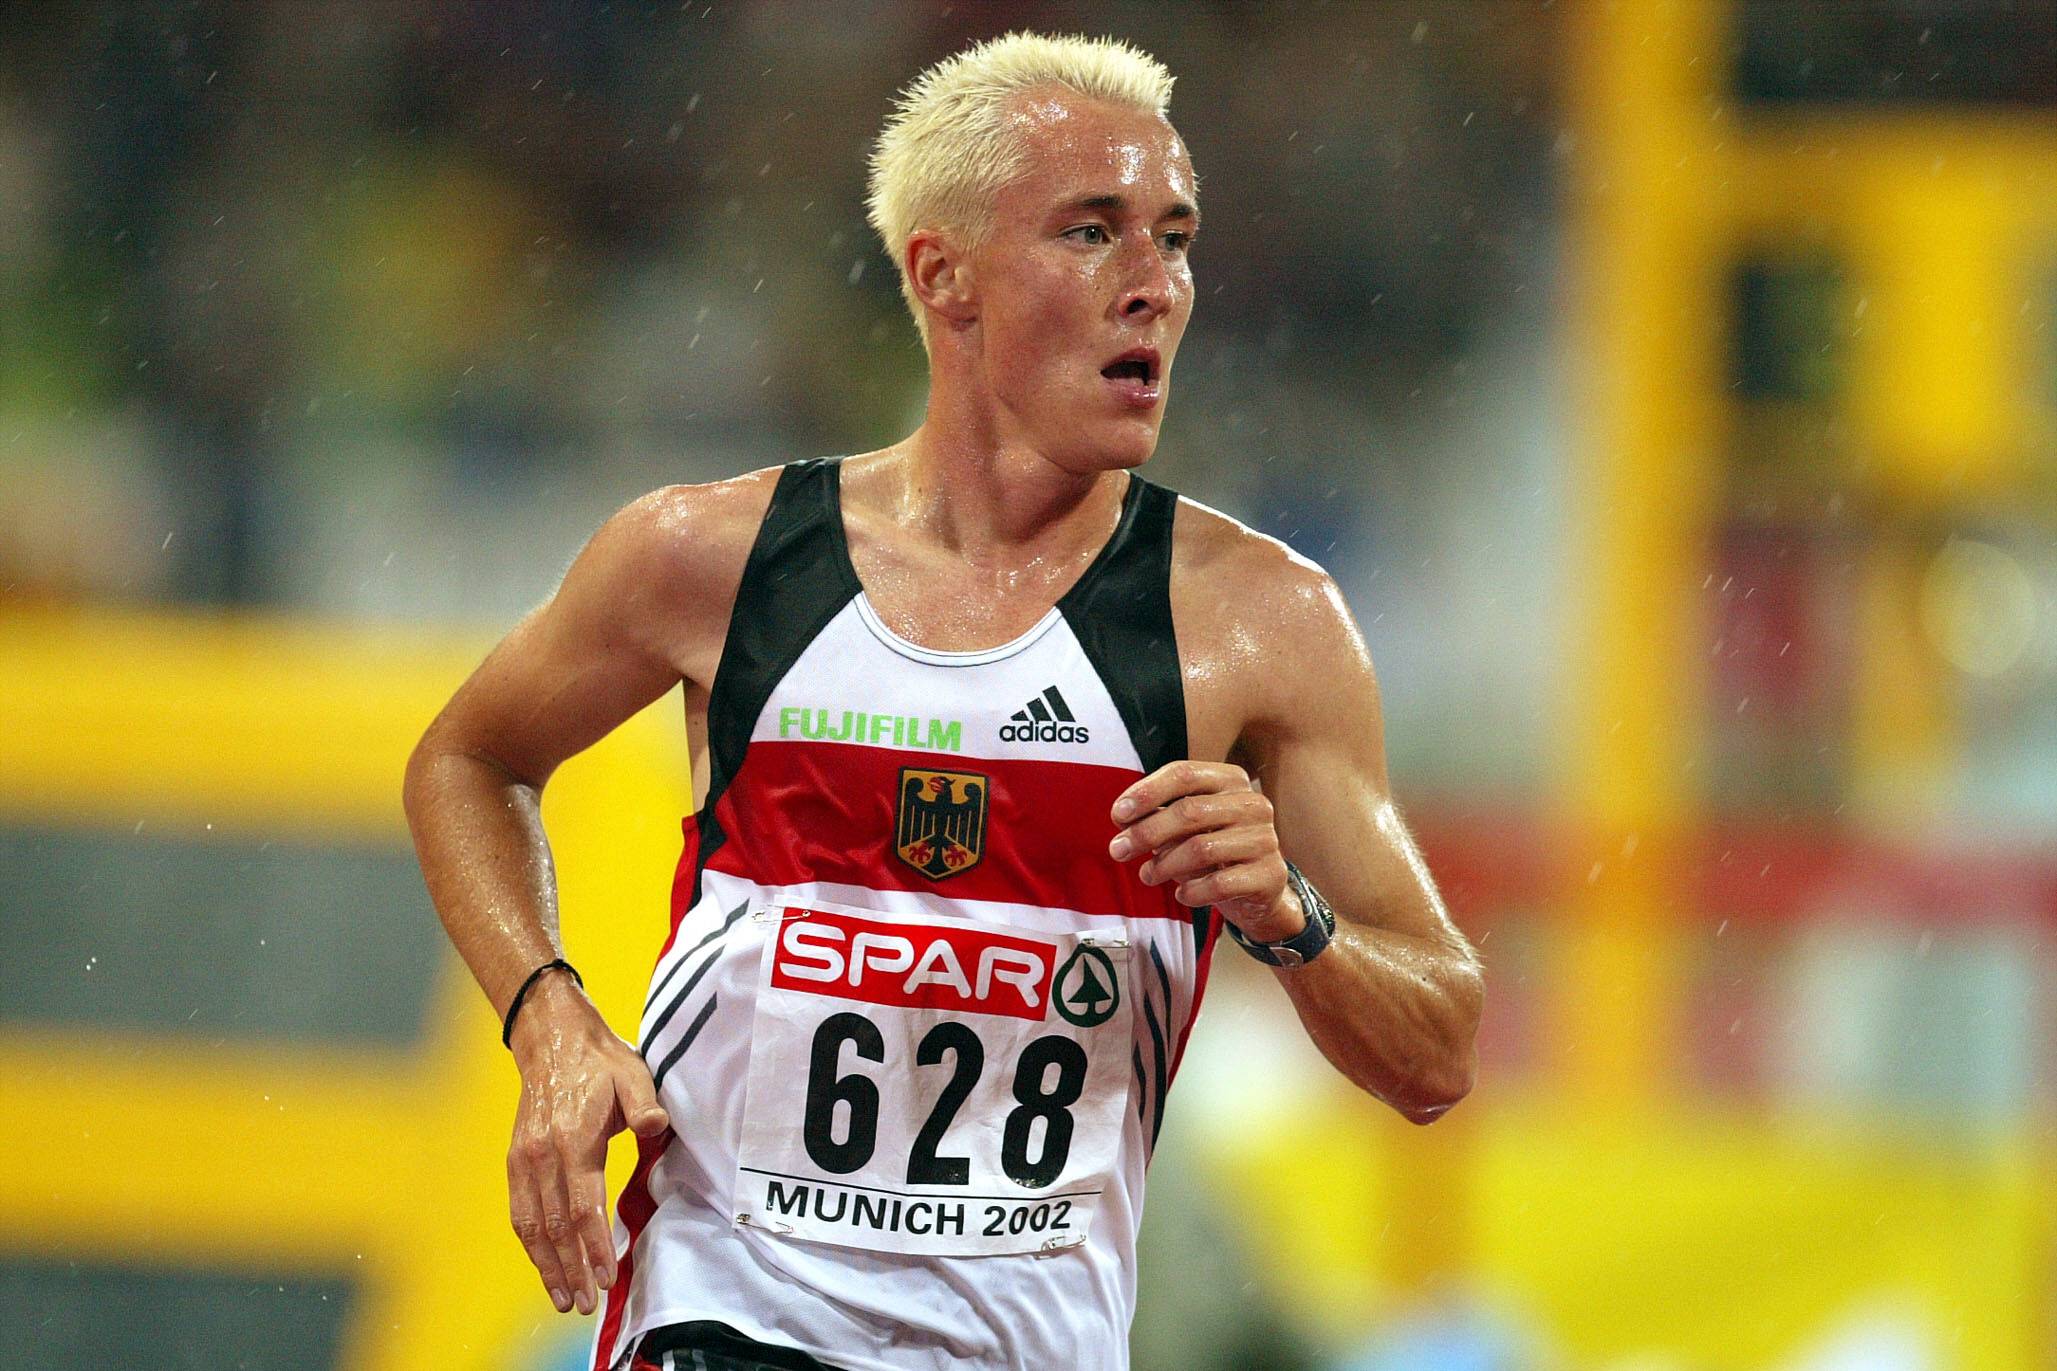 Alexander Lubina bei der Leichtathletik EM 2002 in München. Nun ist der Läufer ist mit 42 Jahren tödlich verunglückt.